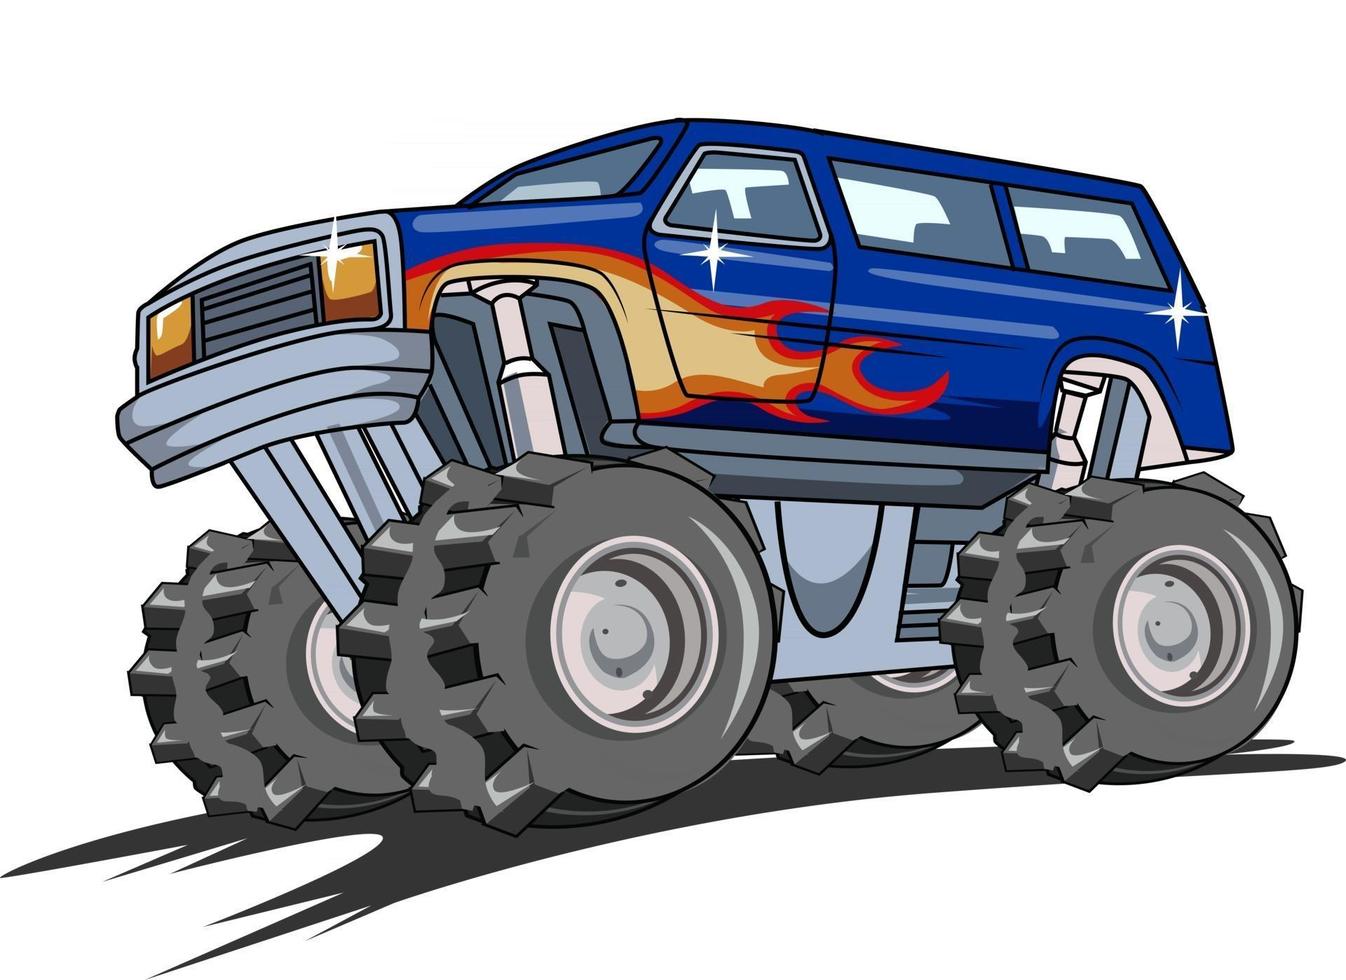 off-road monster truck vector